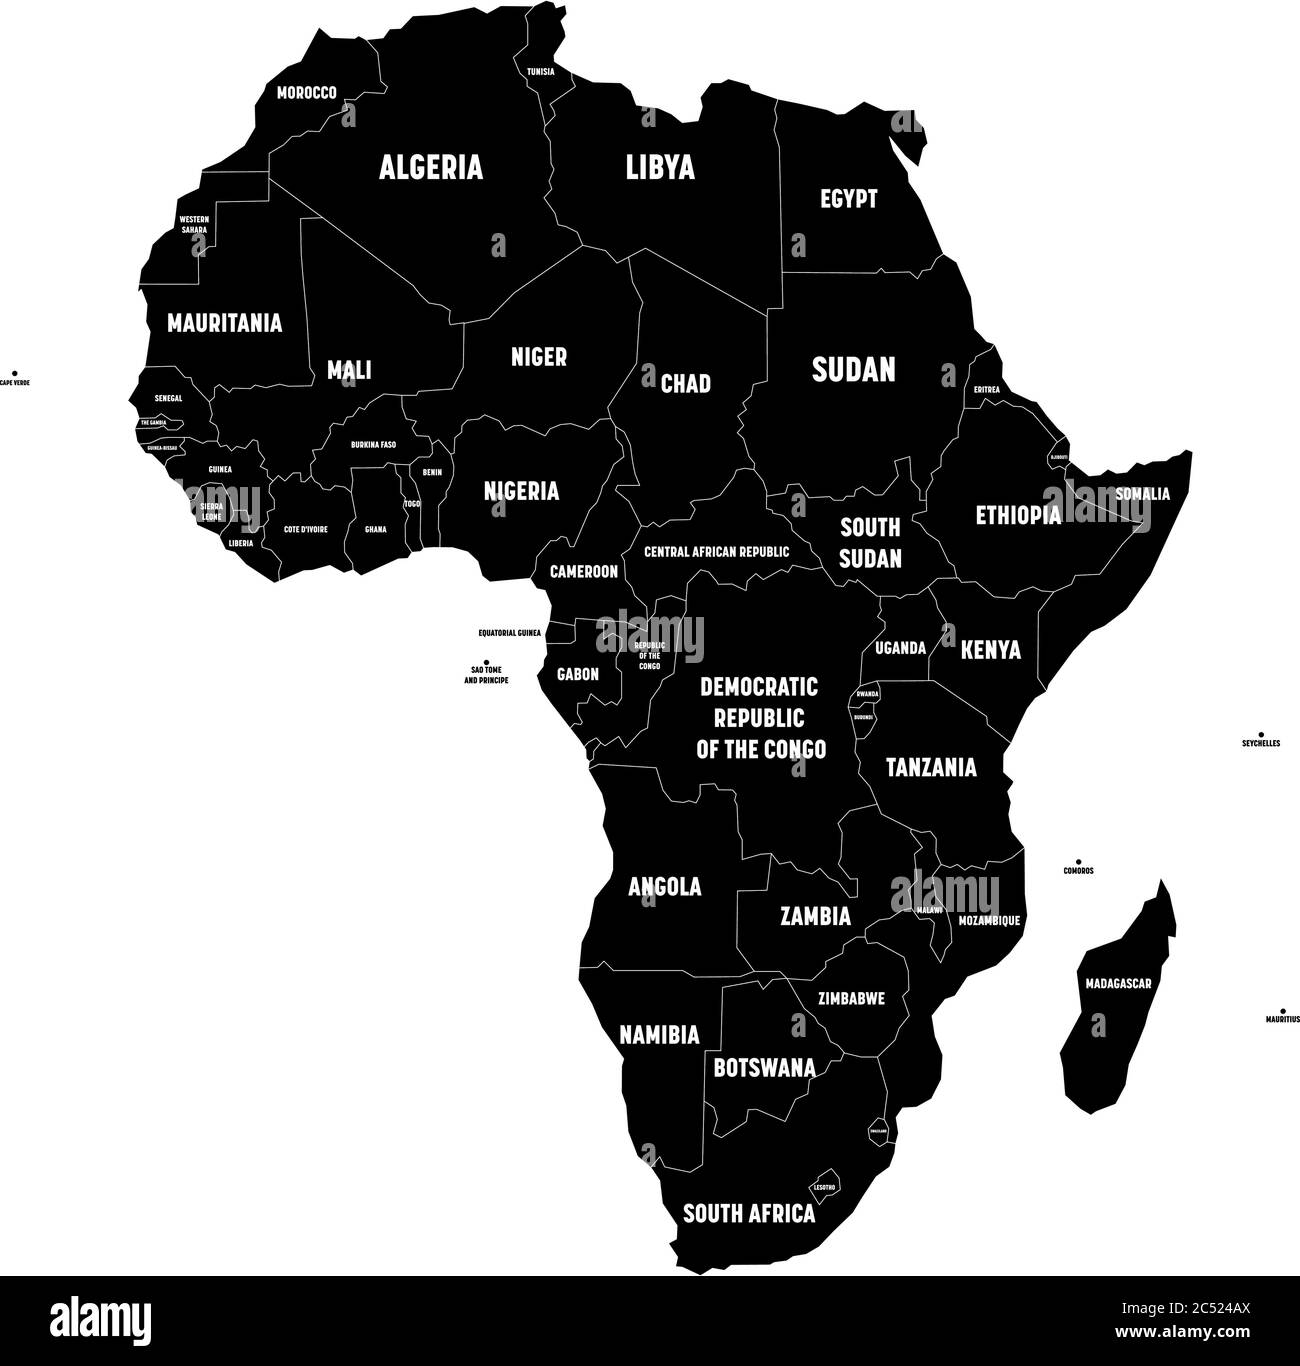 Carte noire du continent africain avec frontières nationales et noms de pays sur fond blanc. Illustration vectorielle. Illustration de Vecteur